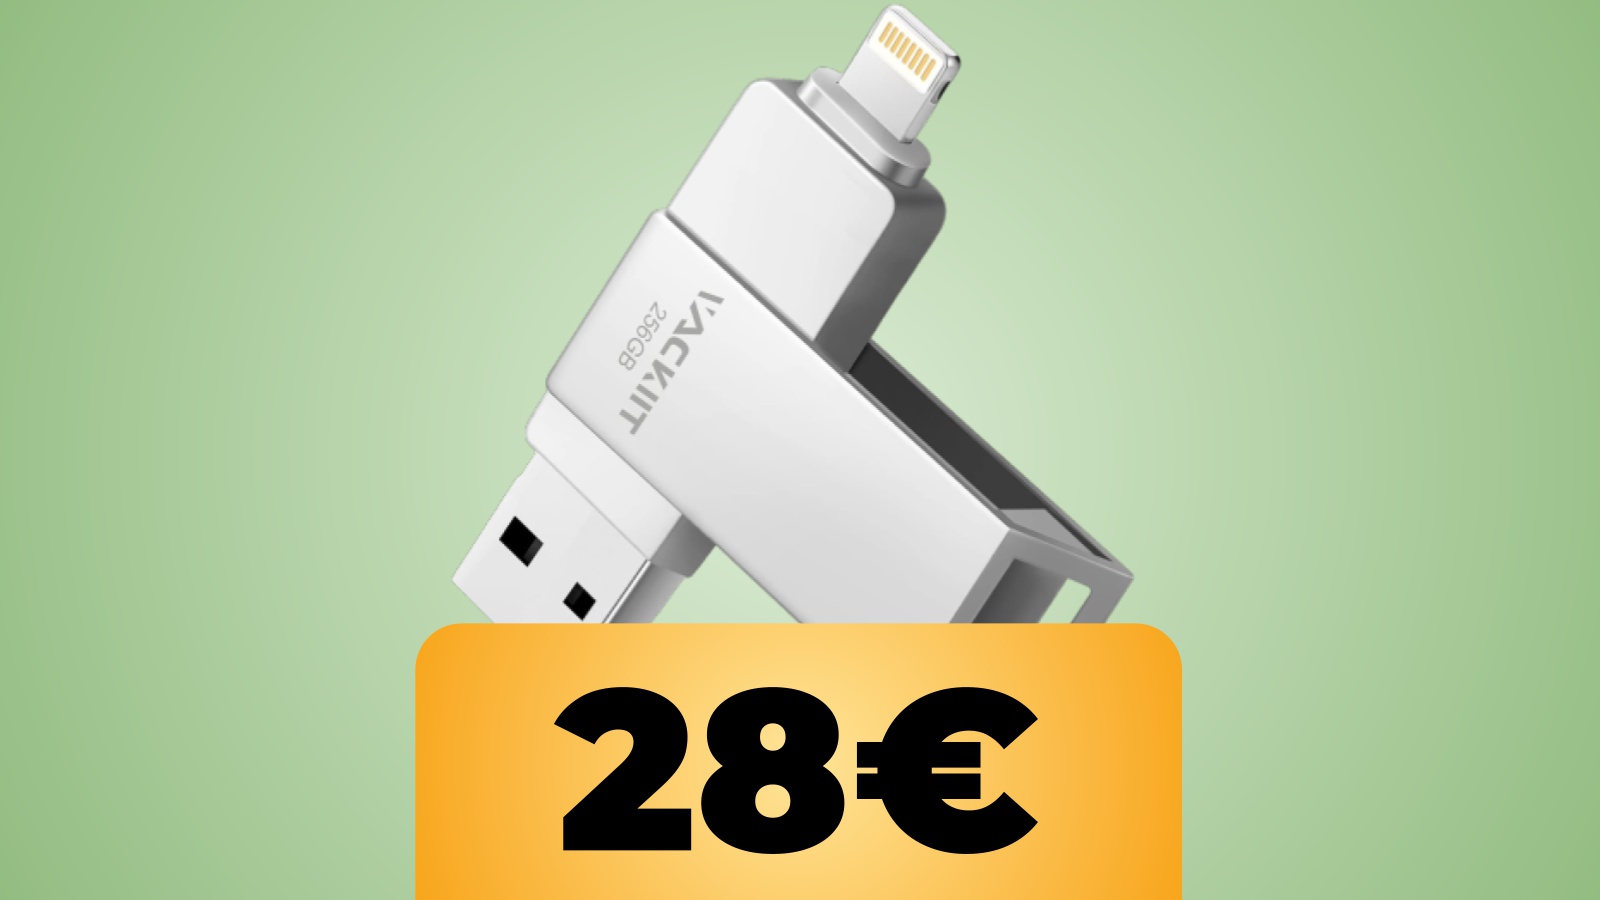 Chiavetta USB da 256 GB per iPhone, iPad, Android e computer in sconto su Amazon col coupon